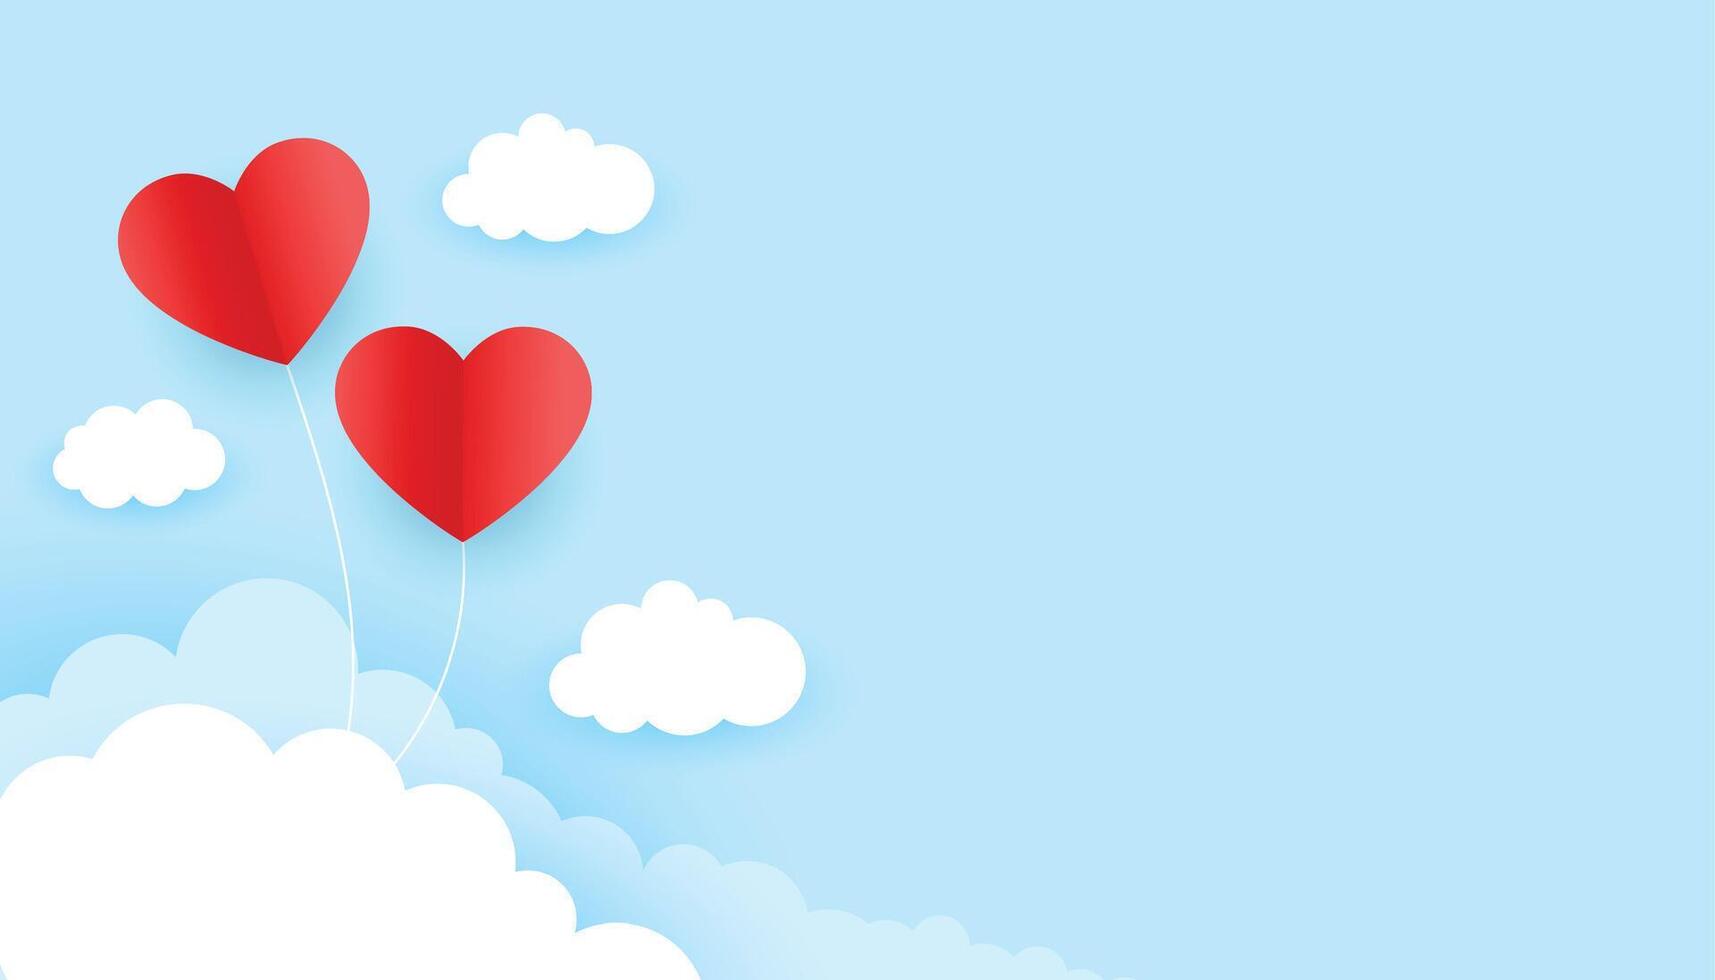 twee rood harten in de lucht valentijnsdag dag achtergrond in papier stijl vector